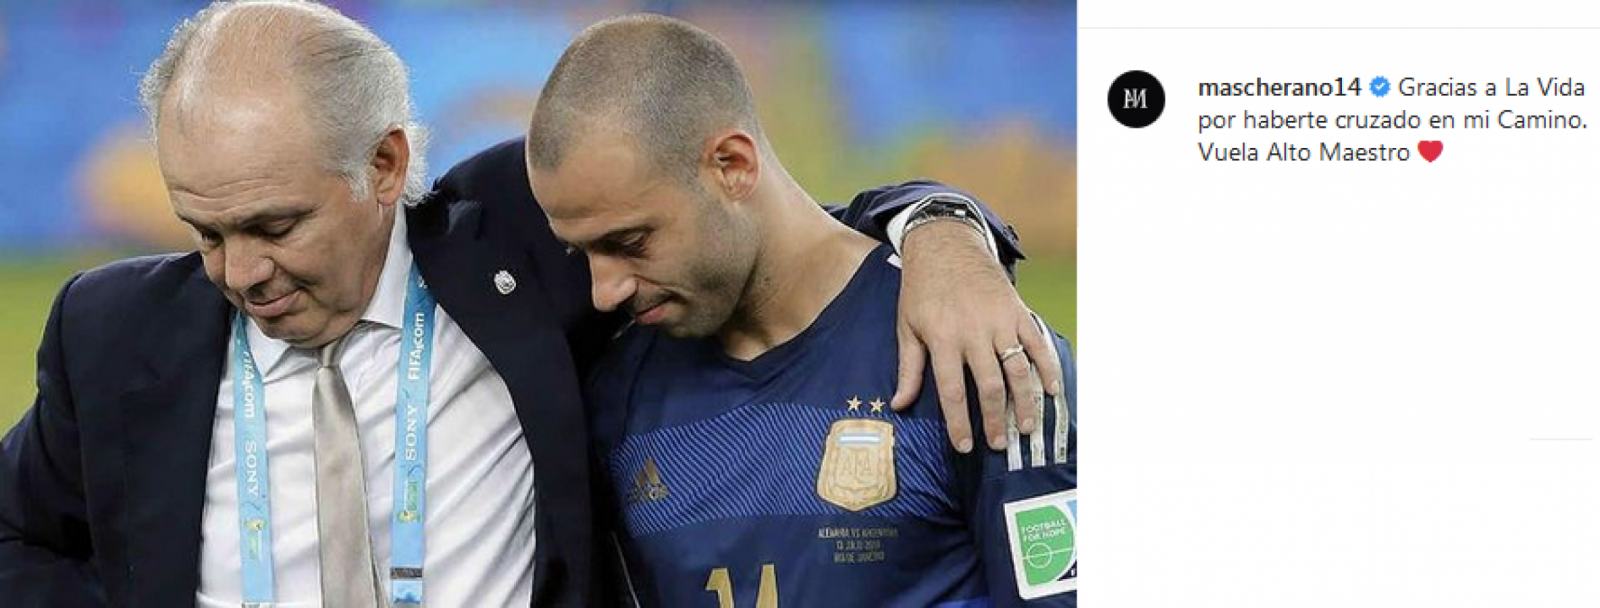 Imagen Mascherano y Sabella, tras la final del mundo perdida en Brasil 2014 ante Alemania. “Vuela Alto Maestro", fue el mensaje del Jefecito.